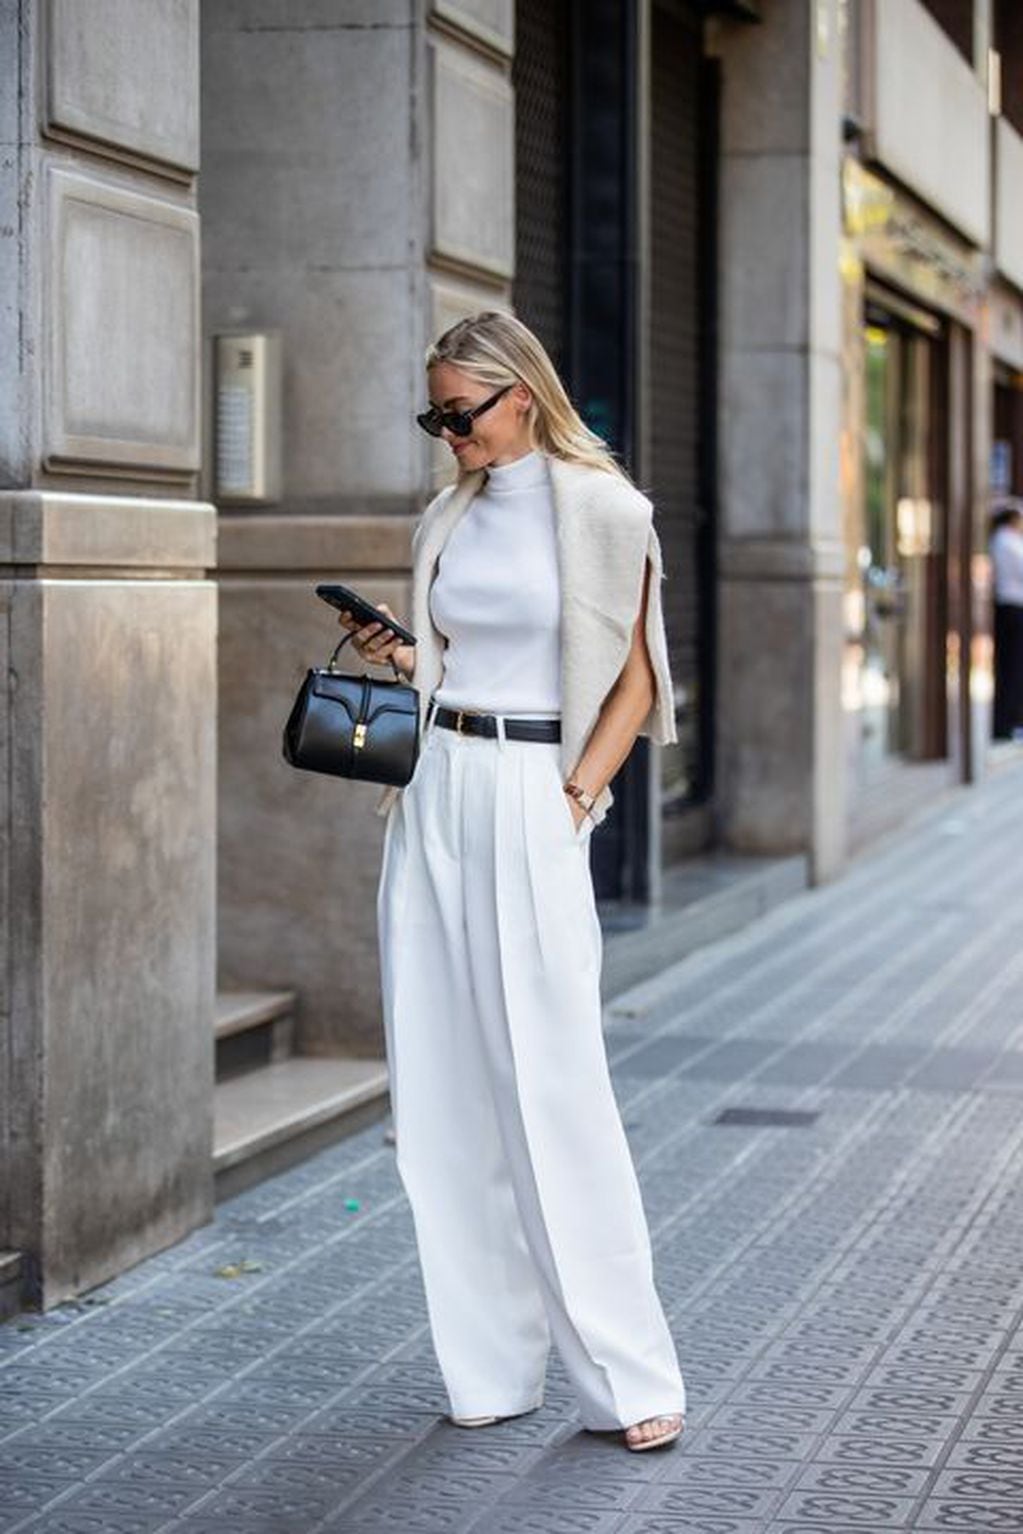 Generalmente, son los expertos en moda los que saben diferenciar entre un lujo silencioso y un simple outfit minimalista.